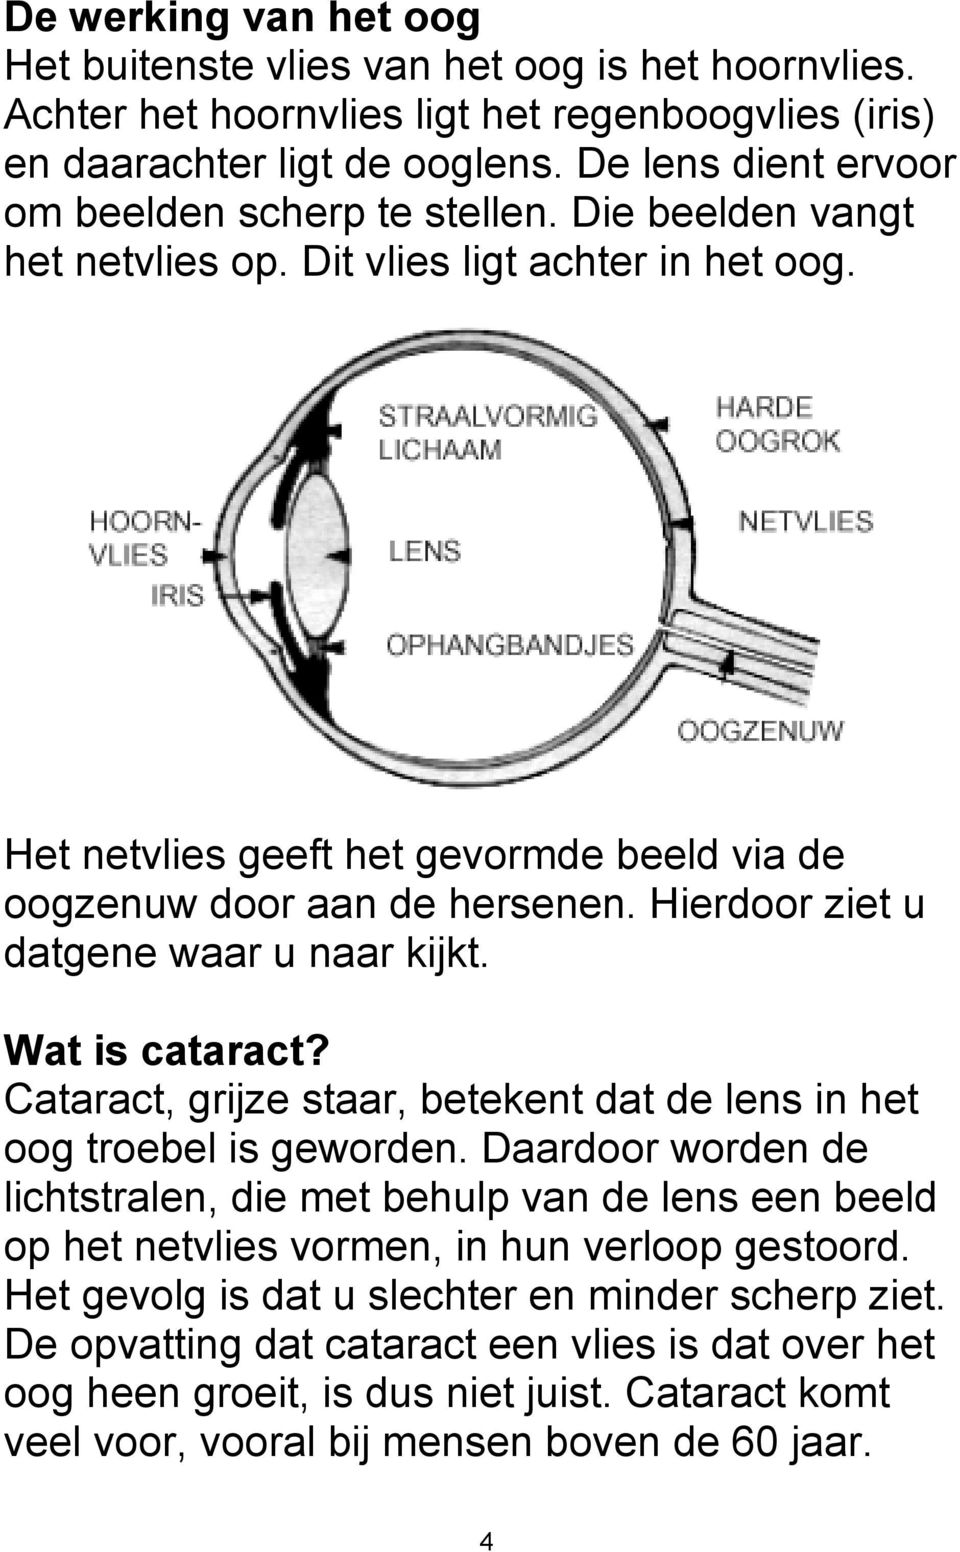 Hierdoor ziet u datgene waar u naar kijkt. Wat is cataract? Cataract, grijze staar, betekent dat de lens in het oog troebel is geworden.